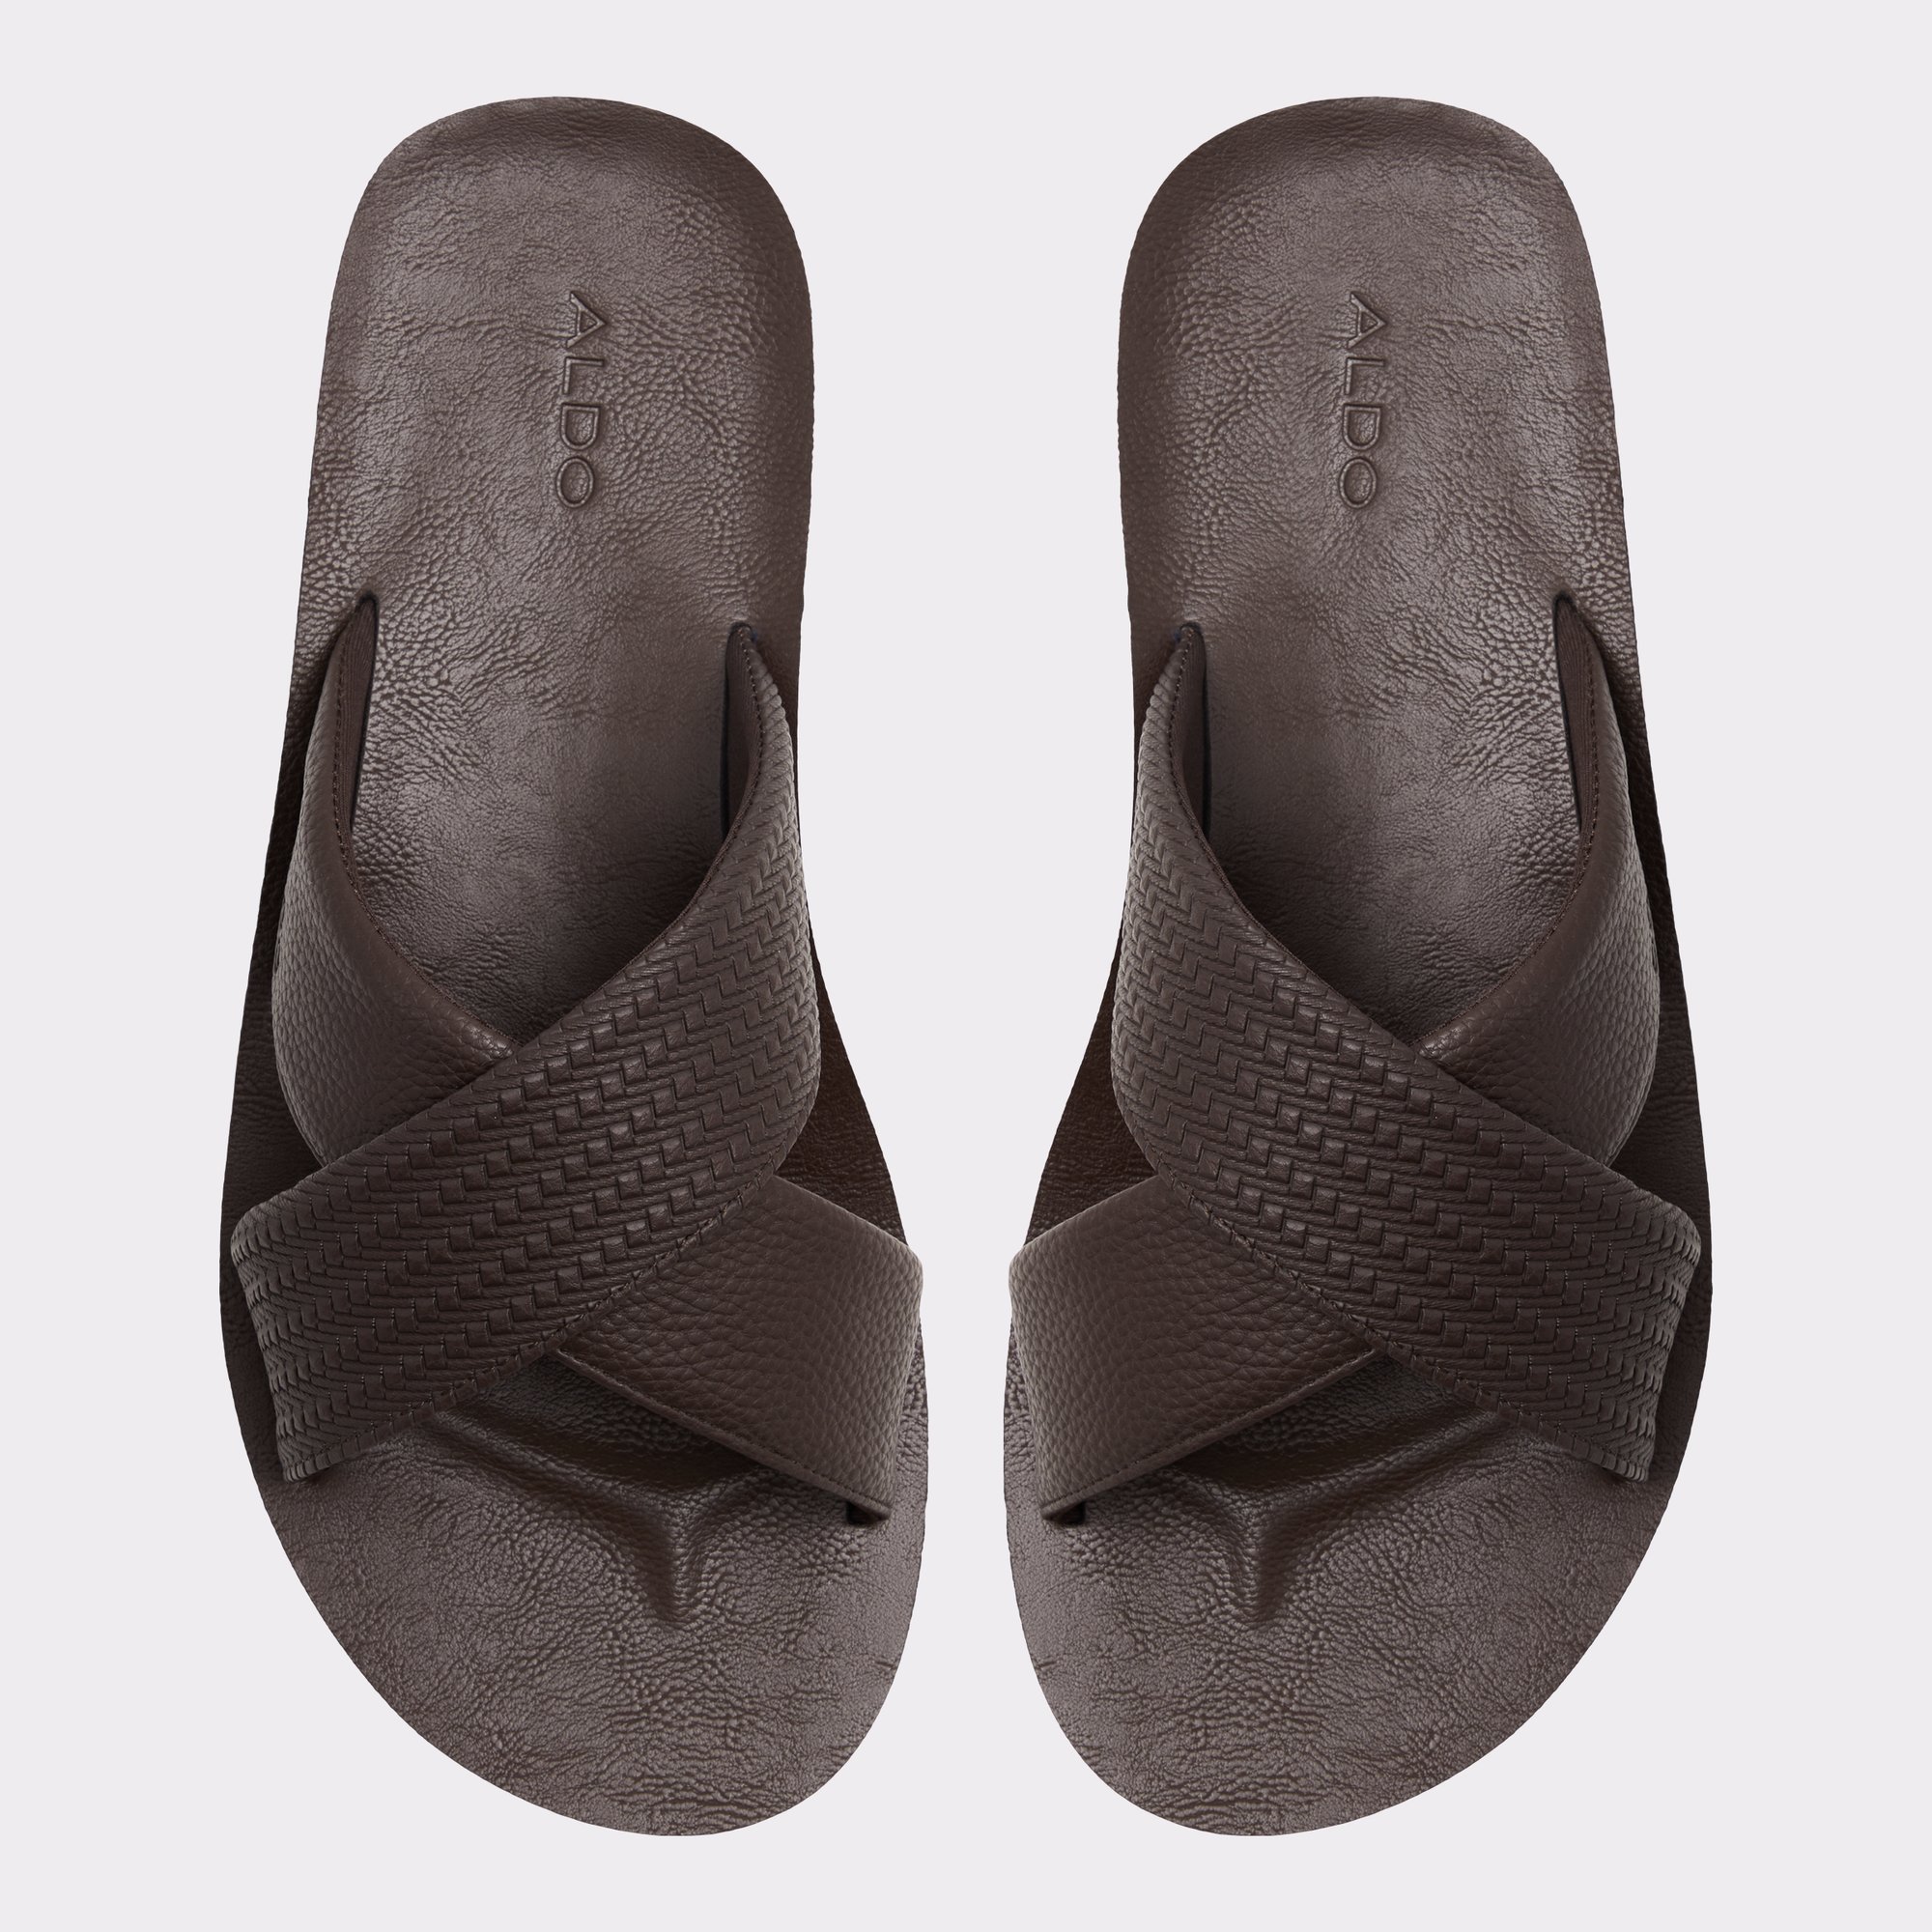 Stmock Other Men's Sandals & Slides | ALDO Canada